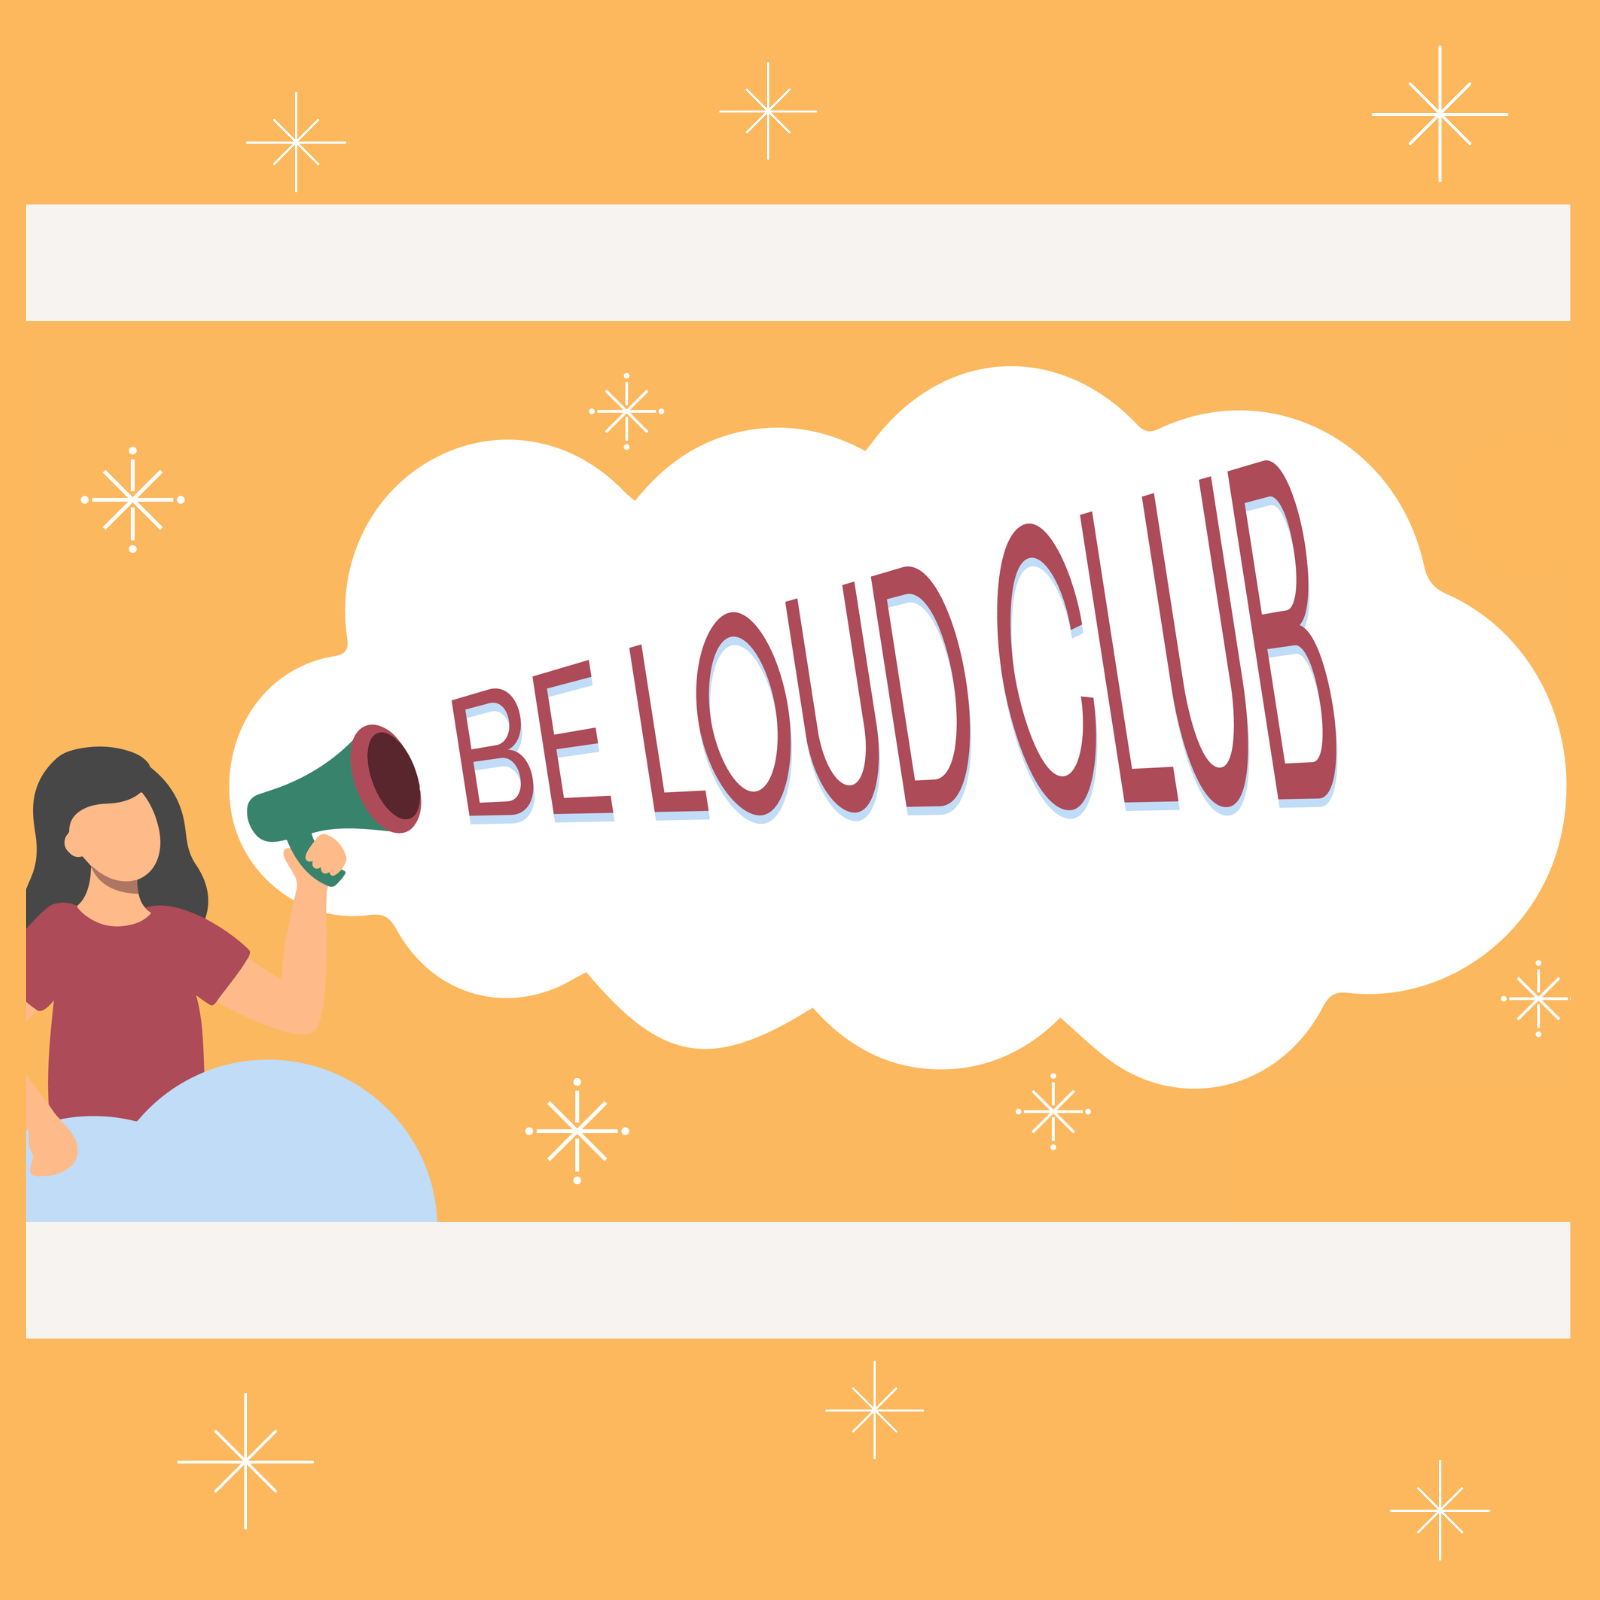 Cô gái cầm loa đọc dòng chữ LỚN Câu lạc bộ trên mây trắng